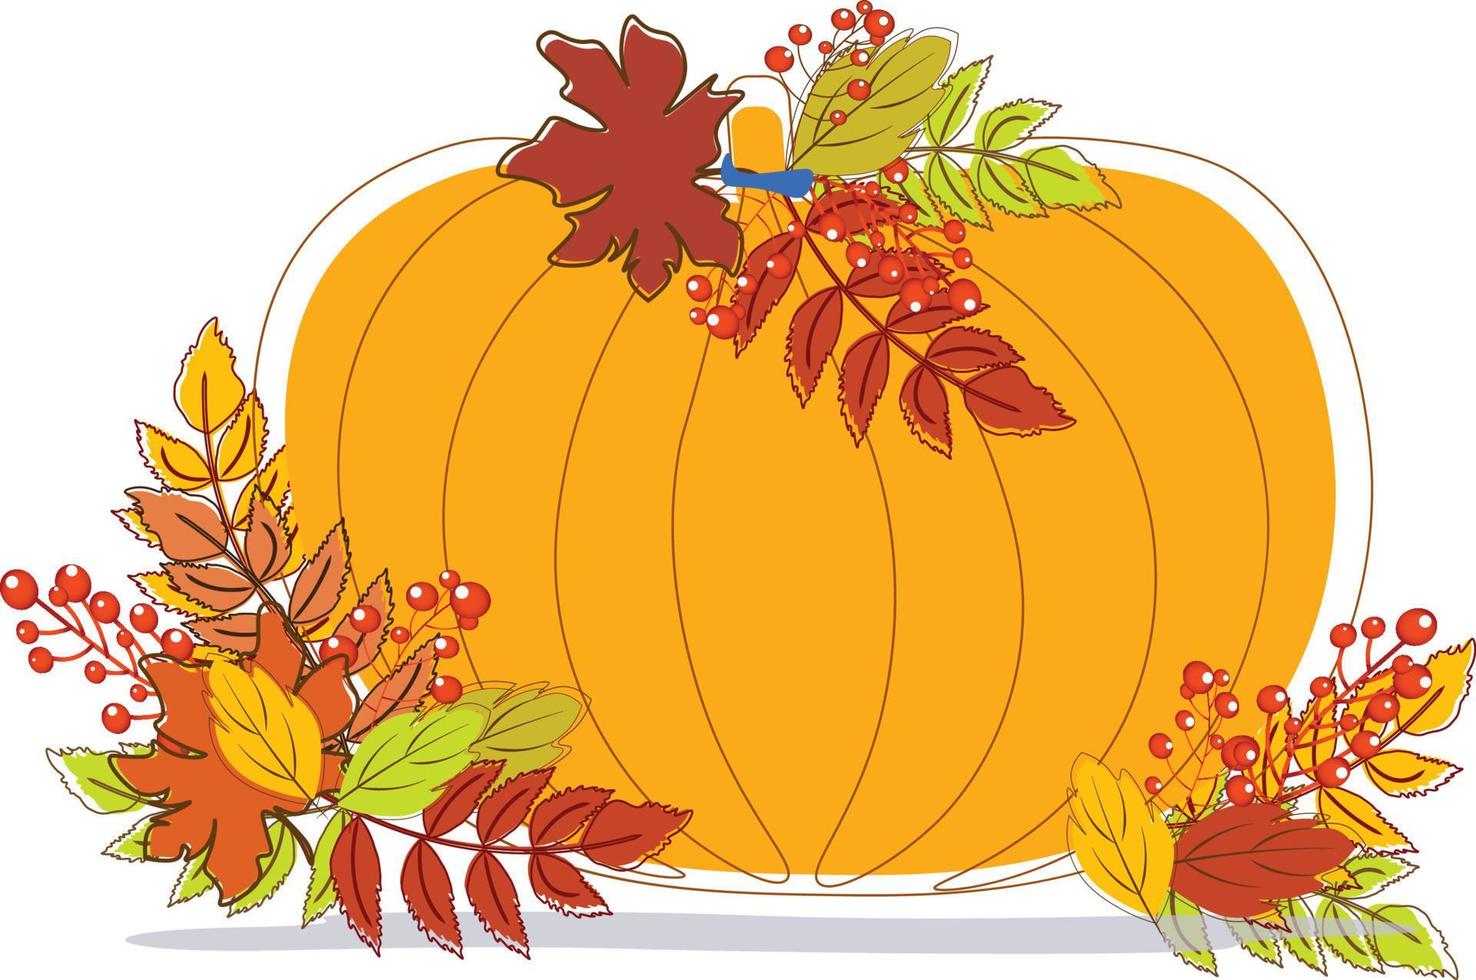 calabaza en otoño con vector de hojas de otoño para decoración e ilustración de fondo. Calabaza de otoño tema aislado en fondo blanco.